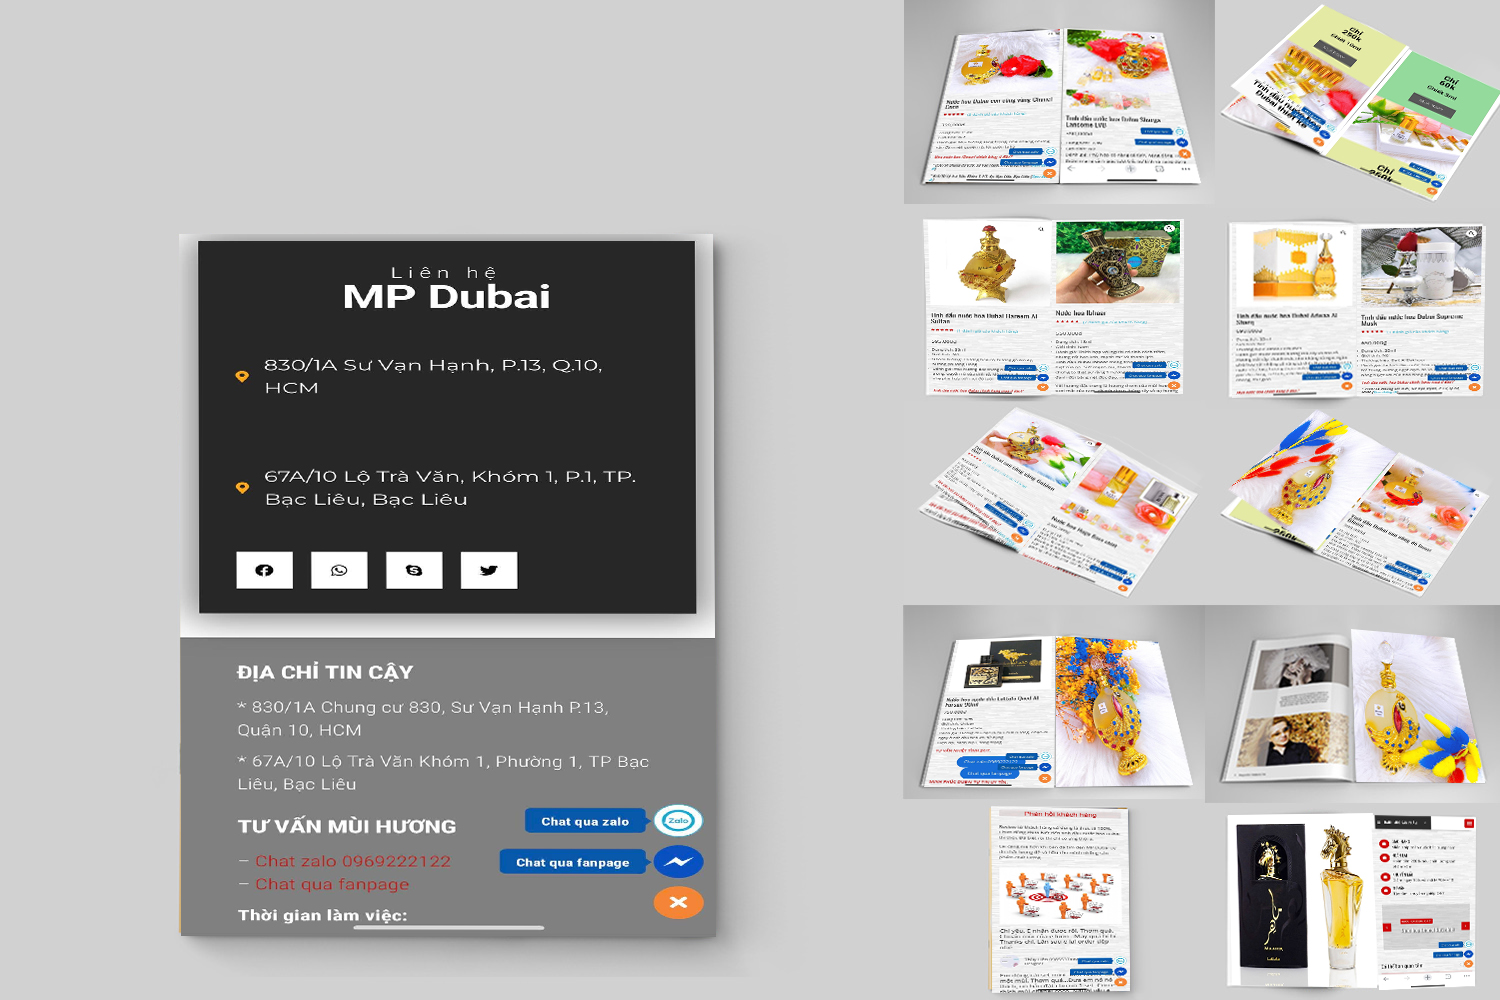 Tiệm bán tinh dầu nước hoa Dubai - MP Dubai